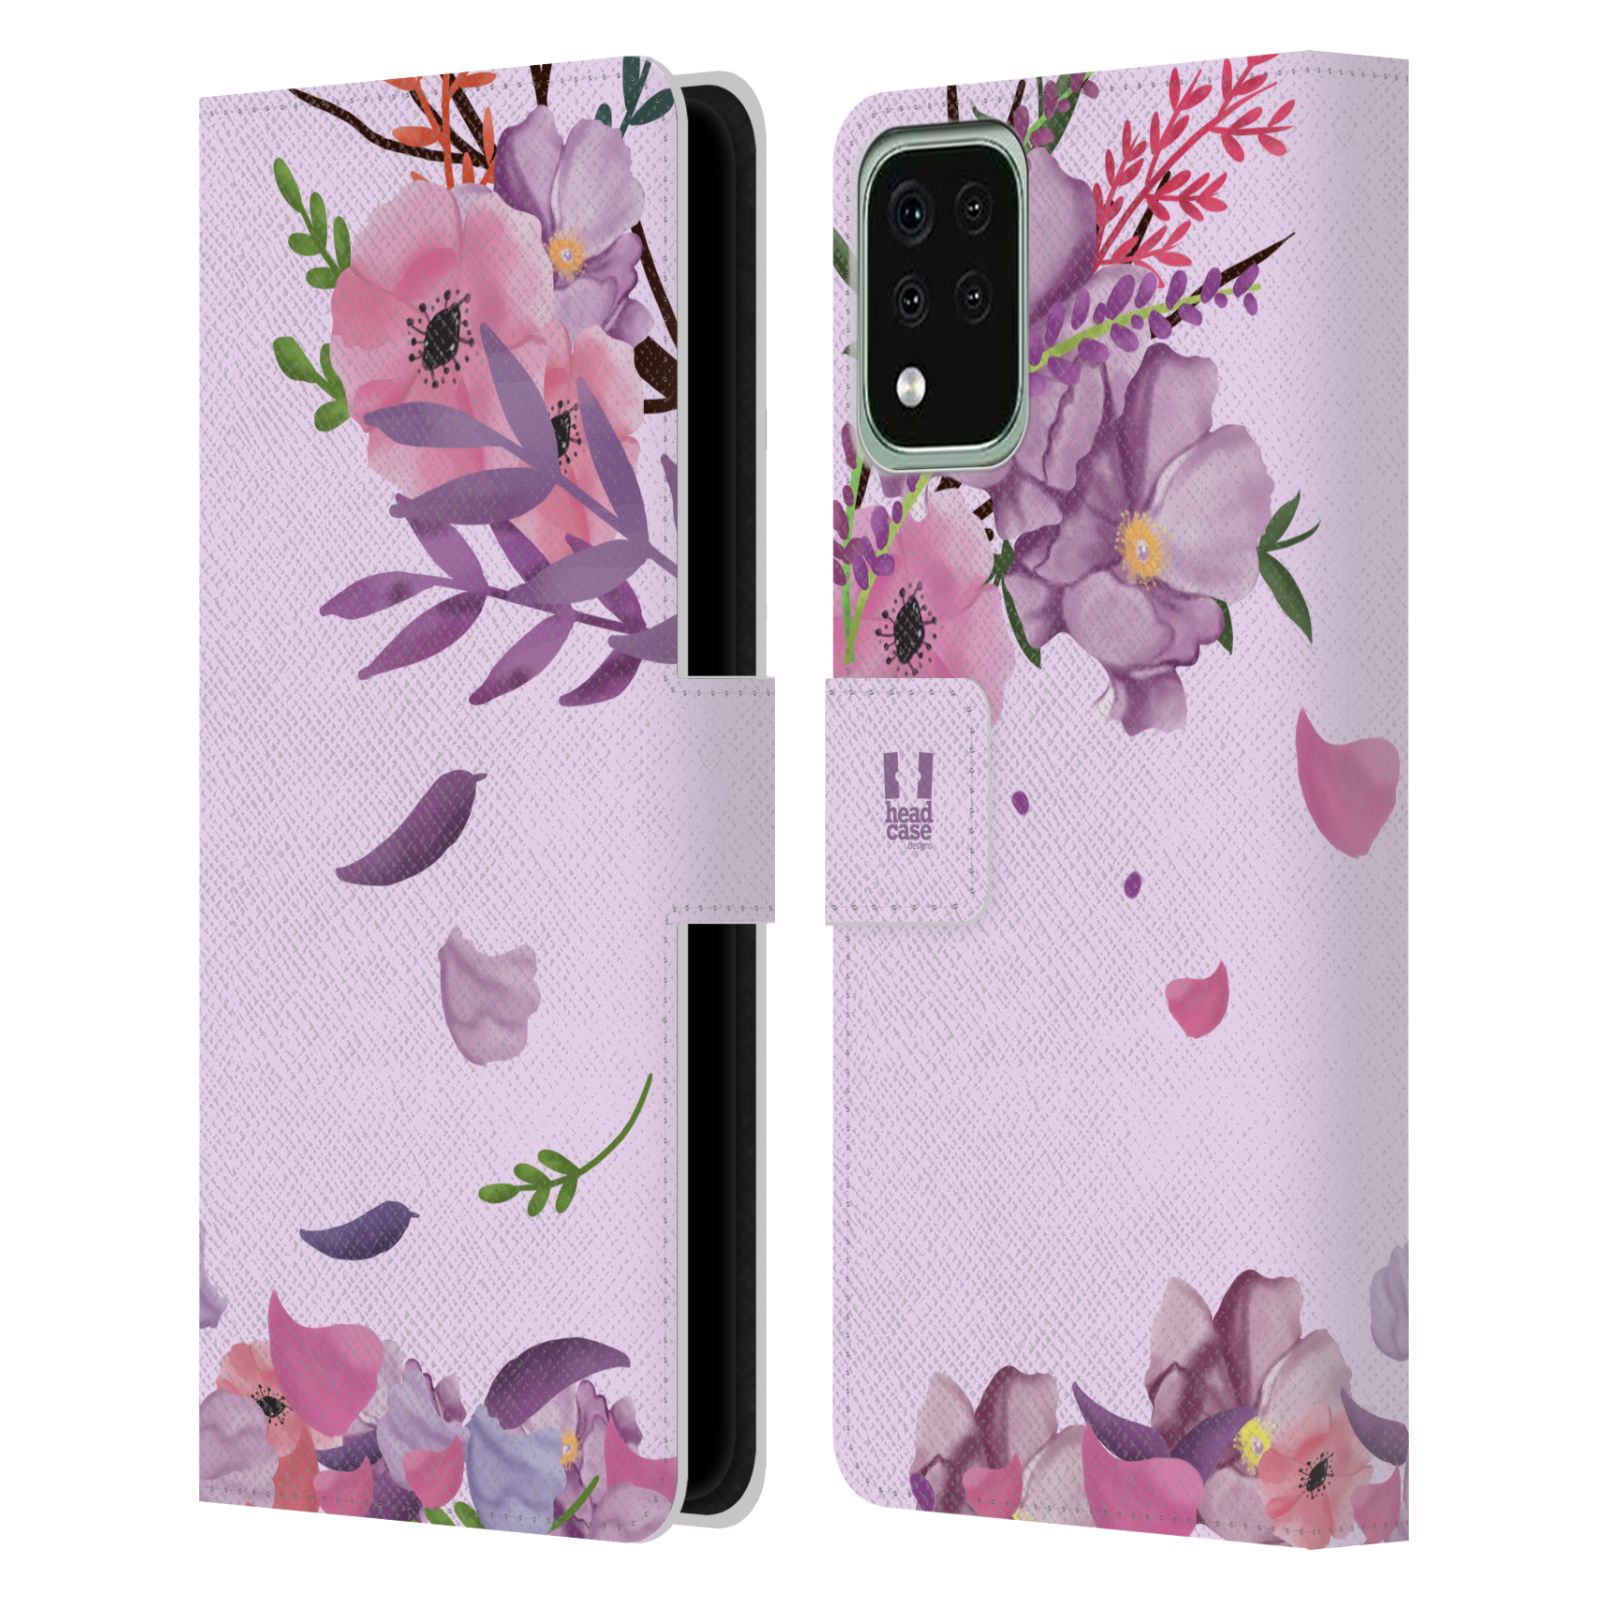 Pouzdro na mobil LG K42 / K52 / K62 - HEAD CASE - Rozkvetlé růže a listy růžová